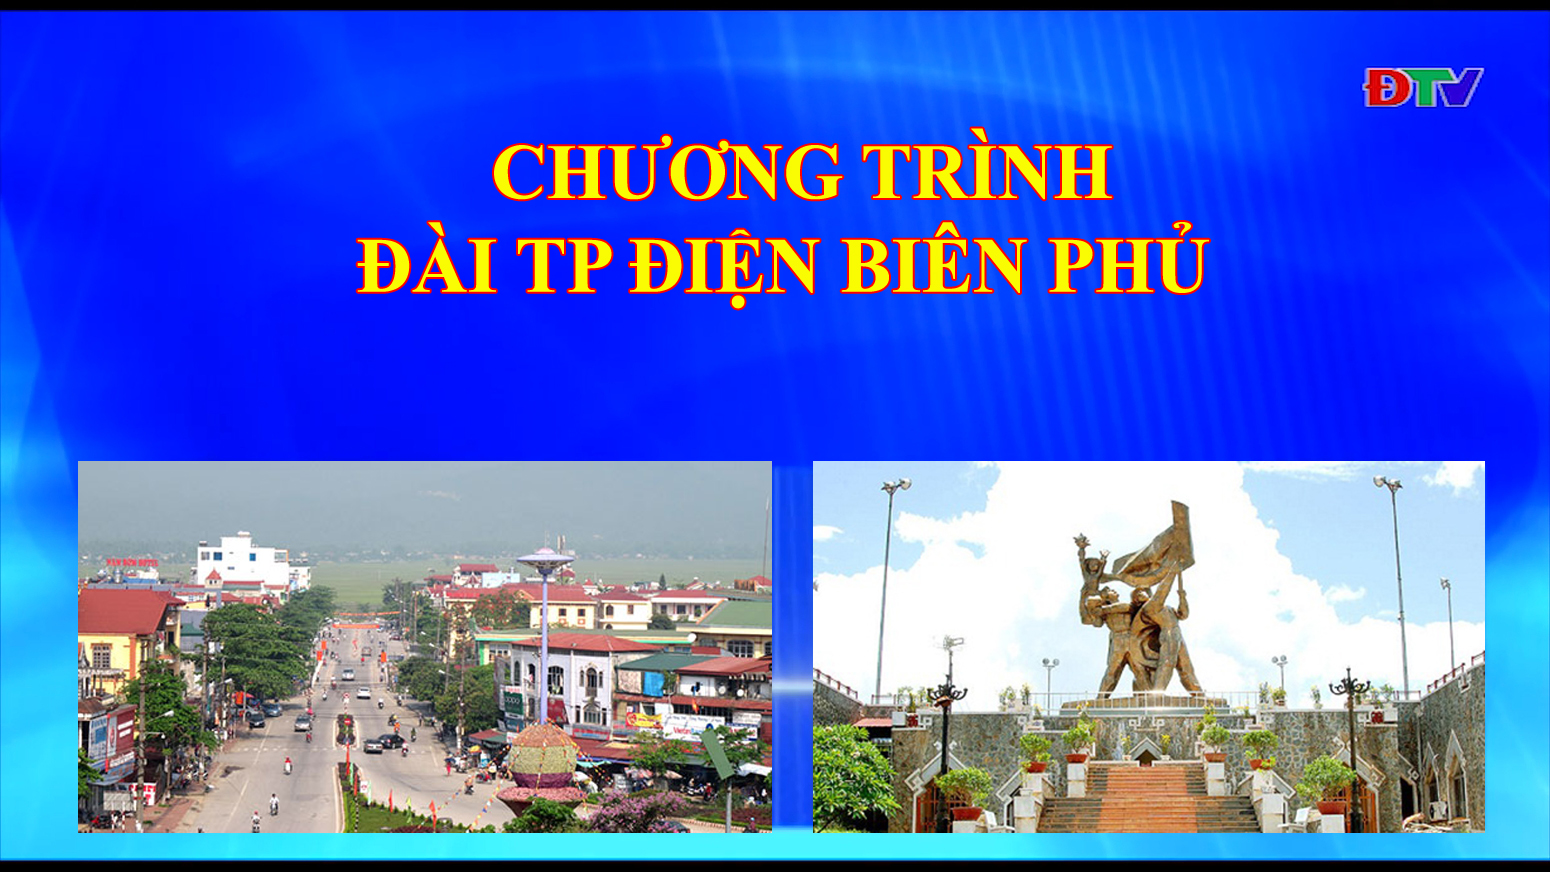 Đài thành phố Điện Biên Phủ (ngày 10-9-2019)